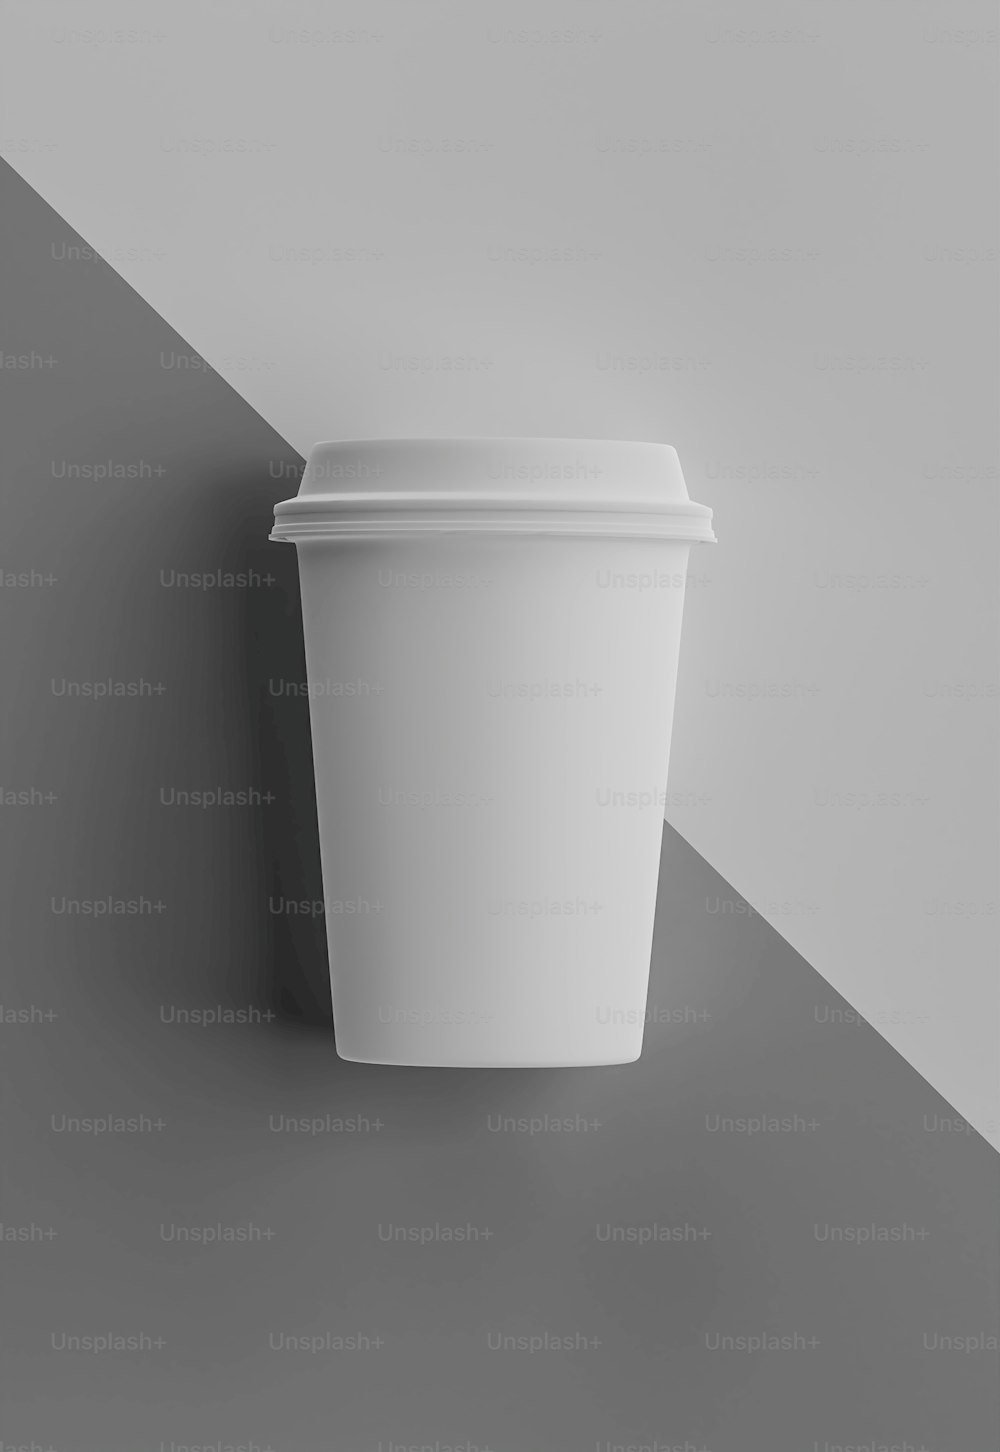 une tasse de café posée sur une table